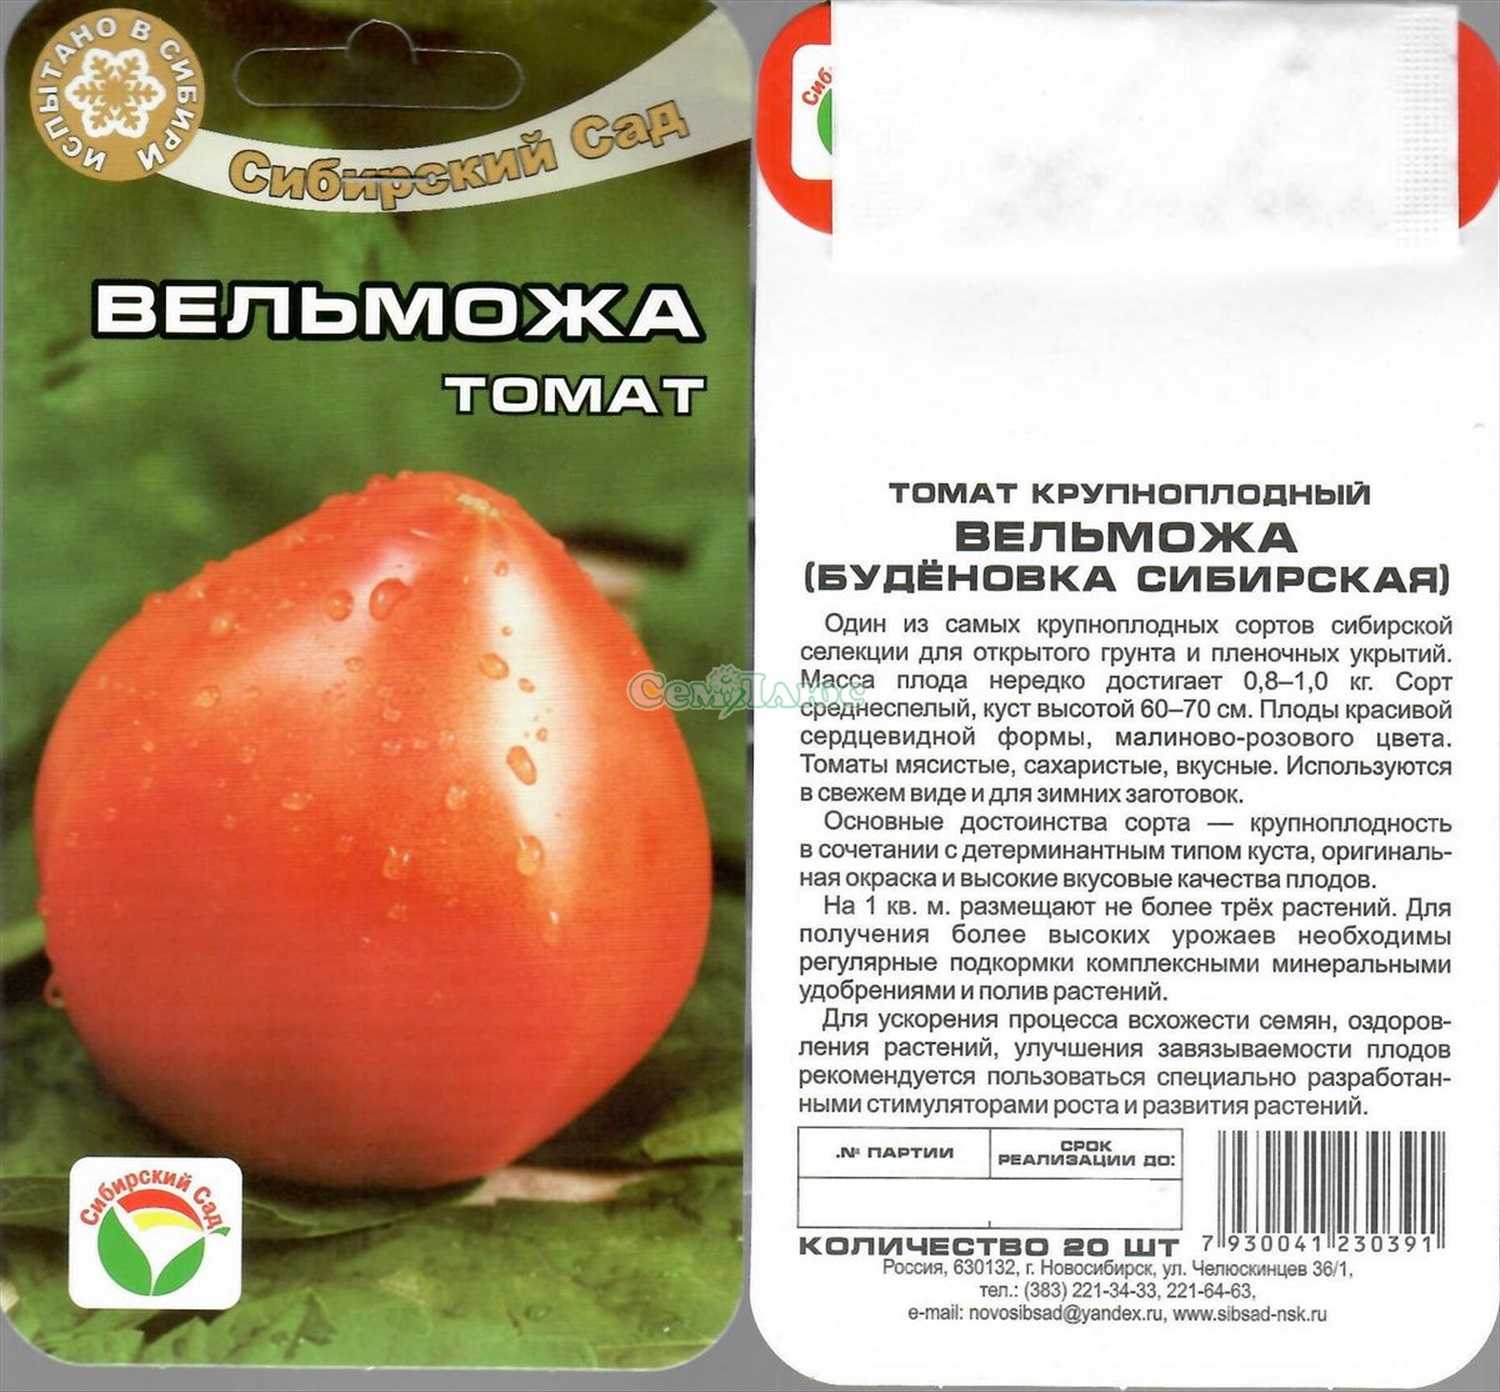 Томат сенсей: характеристика и описание сорта, видео и фото семян сибирский сад, отзывы тех кто сажал помидоры об их урожайности